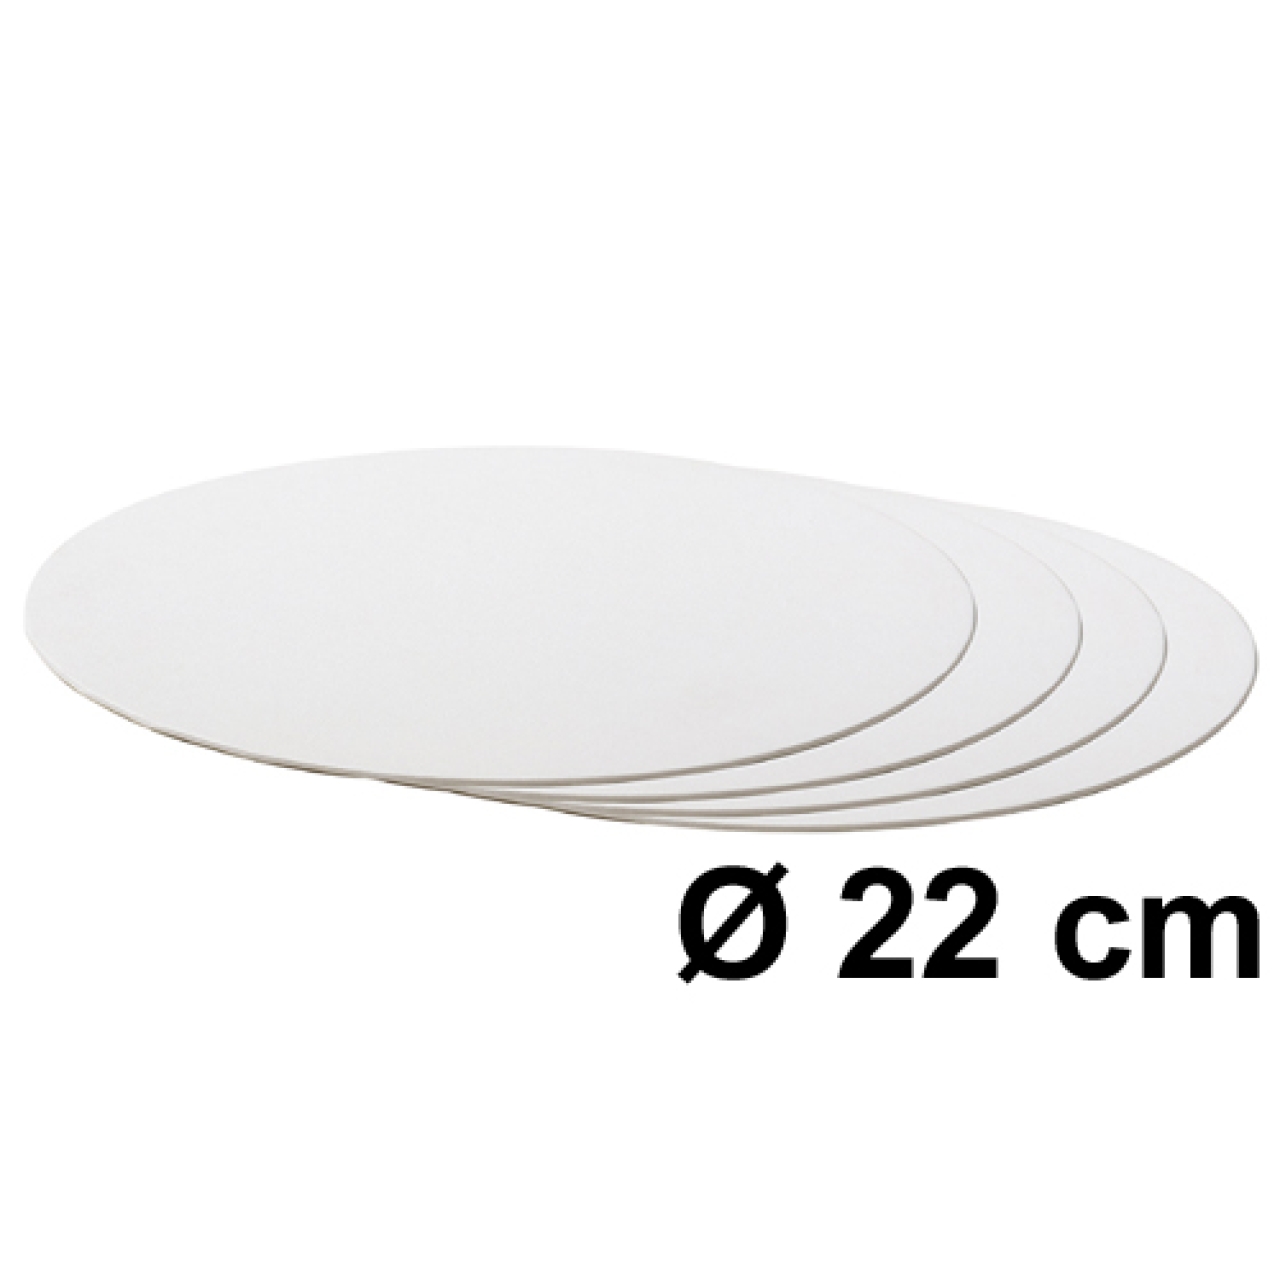 Tortenscheibe Weiß 22 cm